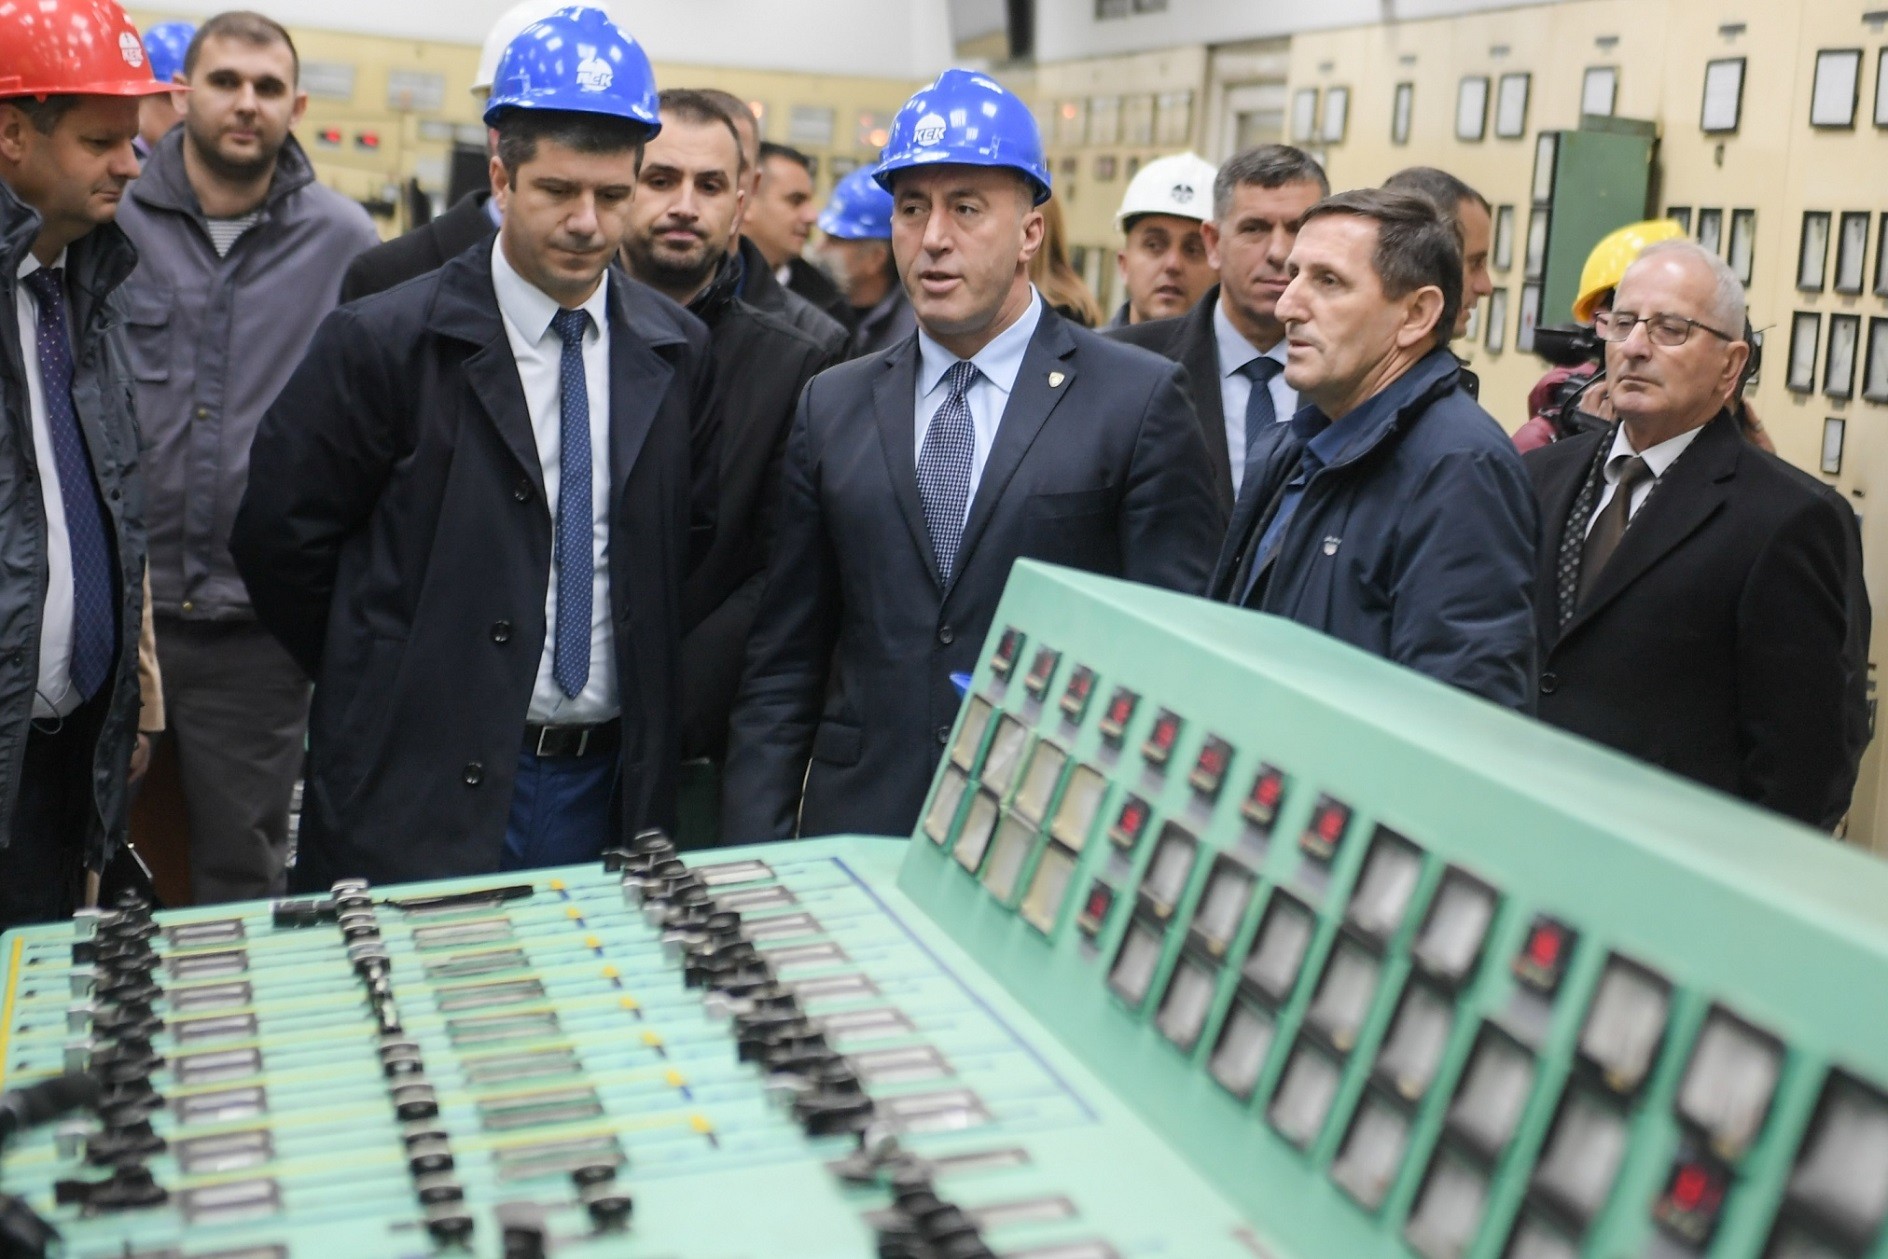 Kryeministri Haradinaj viziton Korporatën Energjetike të Kosovës